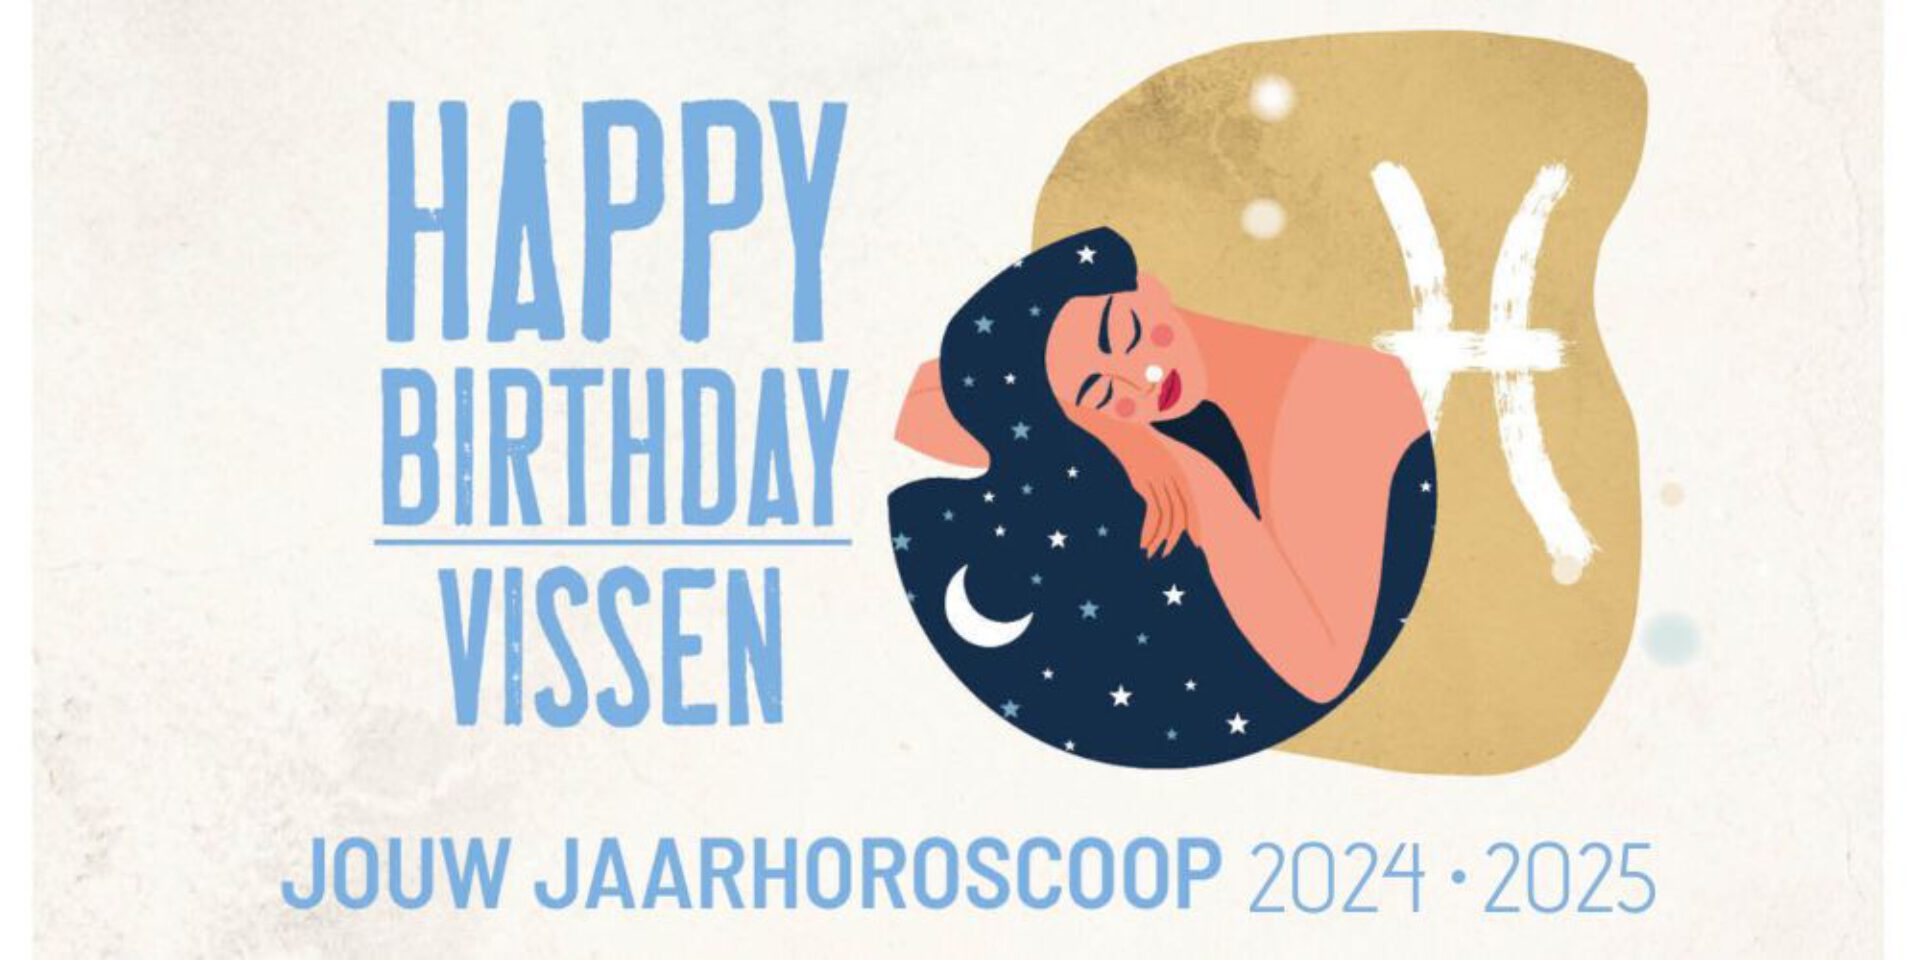 Vissen, jouw jaarhoroscoop 2024-2025: gelukkige verjaardag!